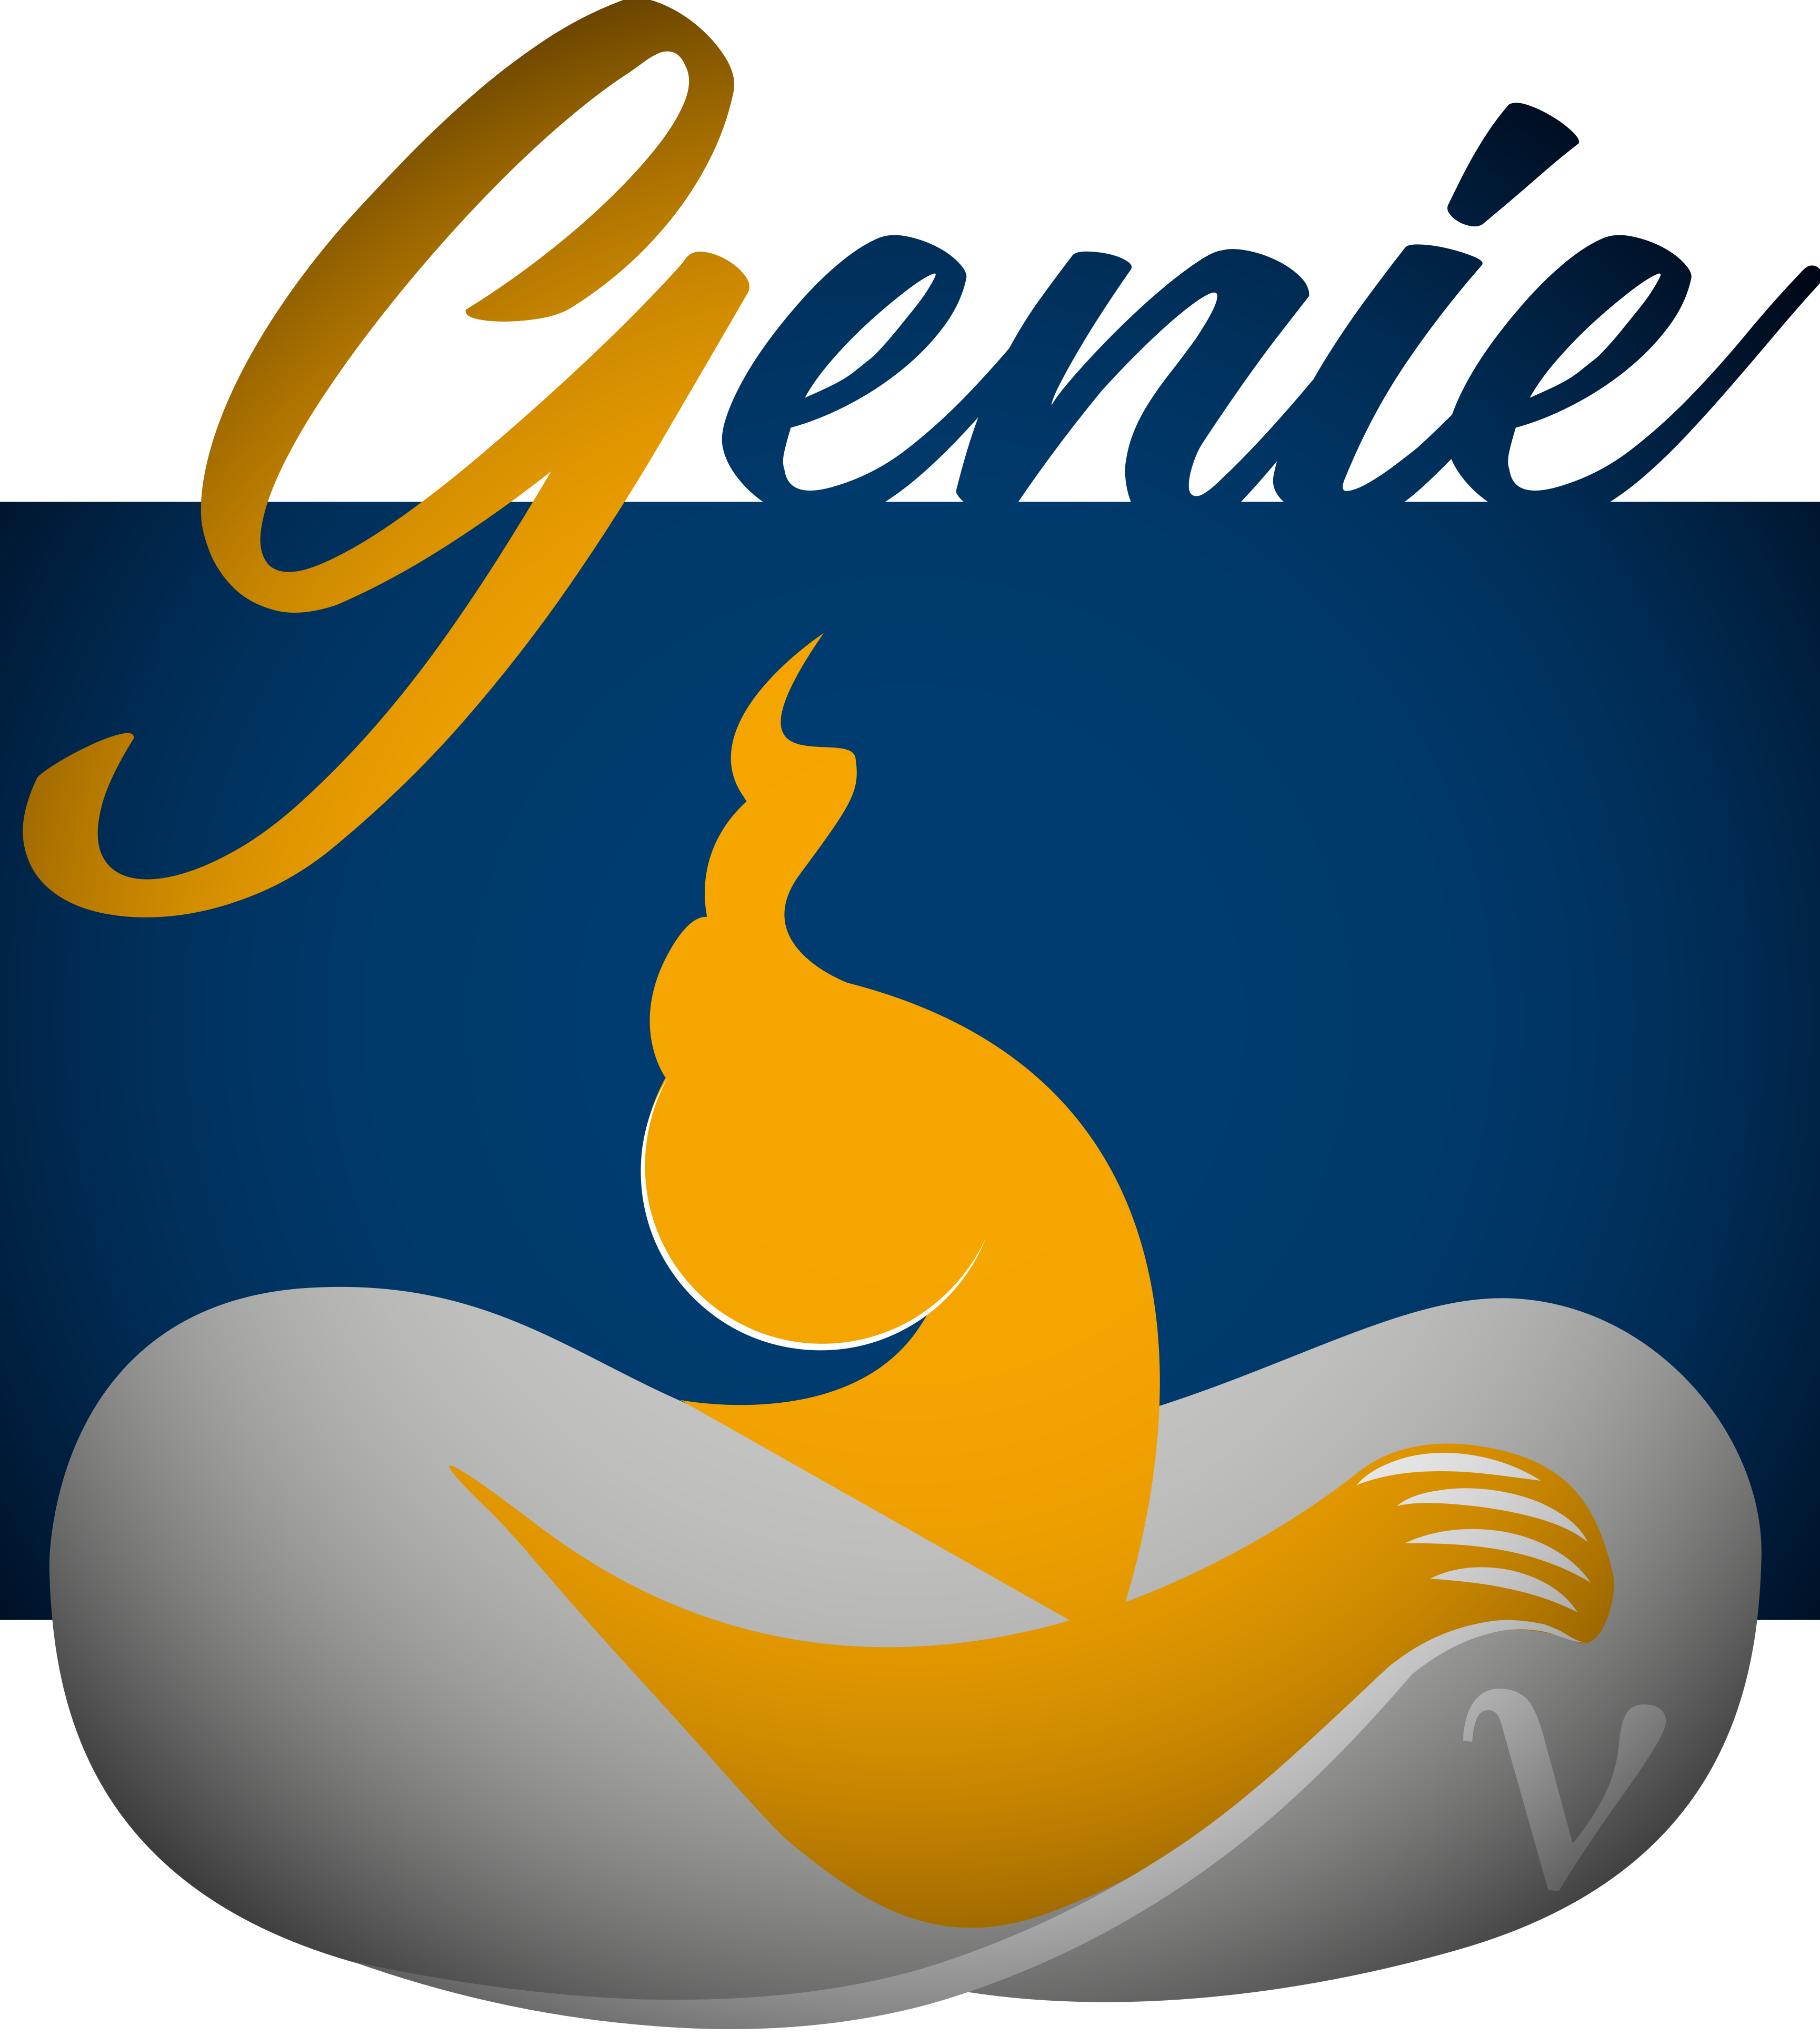 GENIE_logo